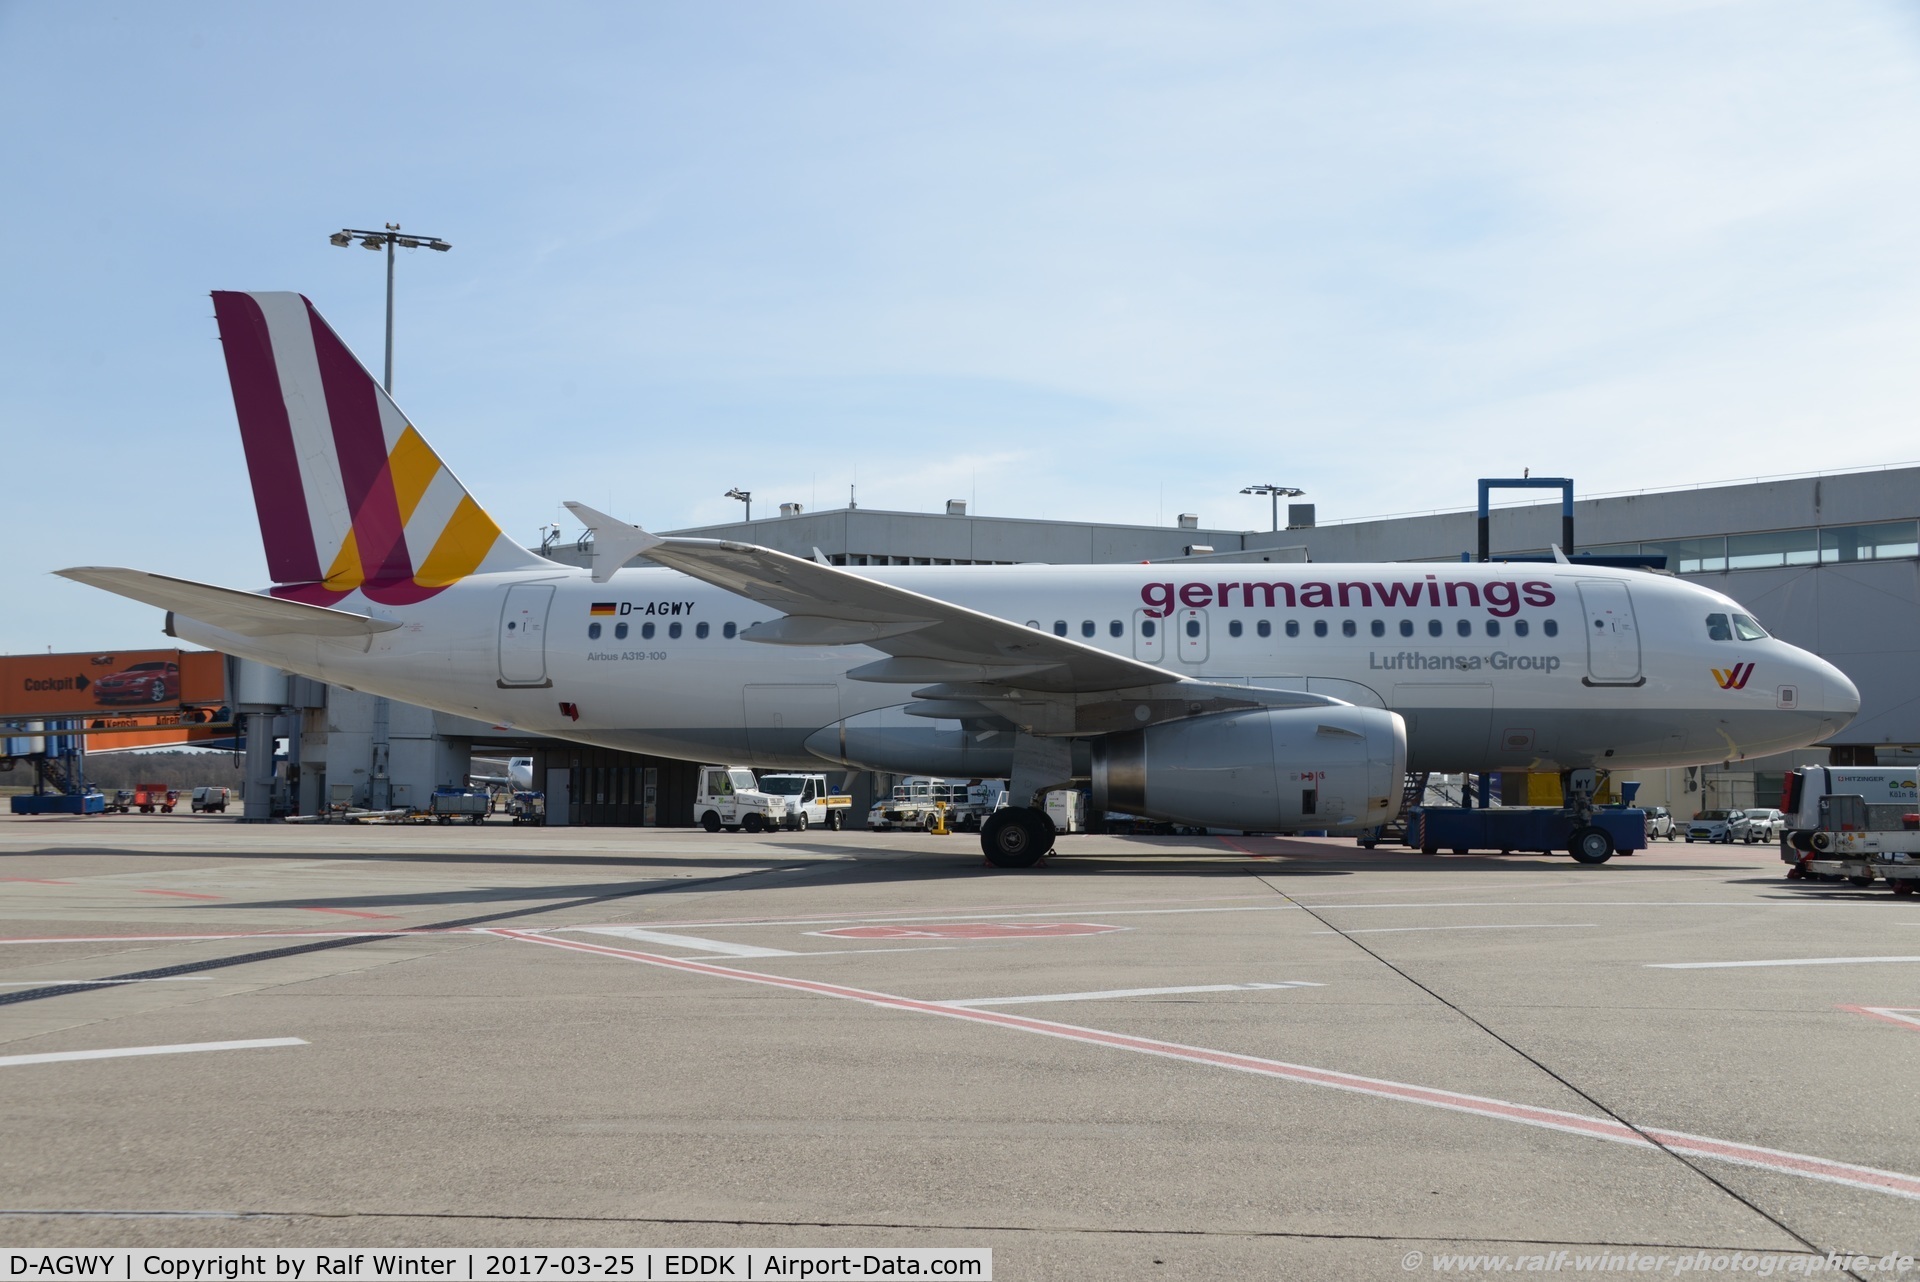 D-AGWY, 2013 Airbus A319-132 C/N 5941, Airbus A319-132 - 4U GWI Germanwings - 5941 - D-AGWY - 25.03.2017 - CGN